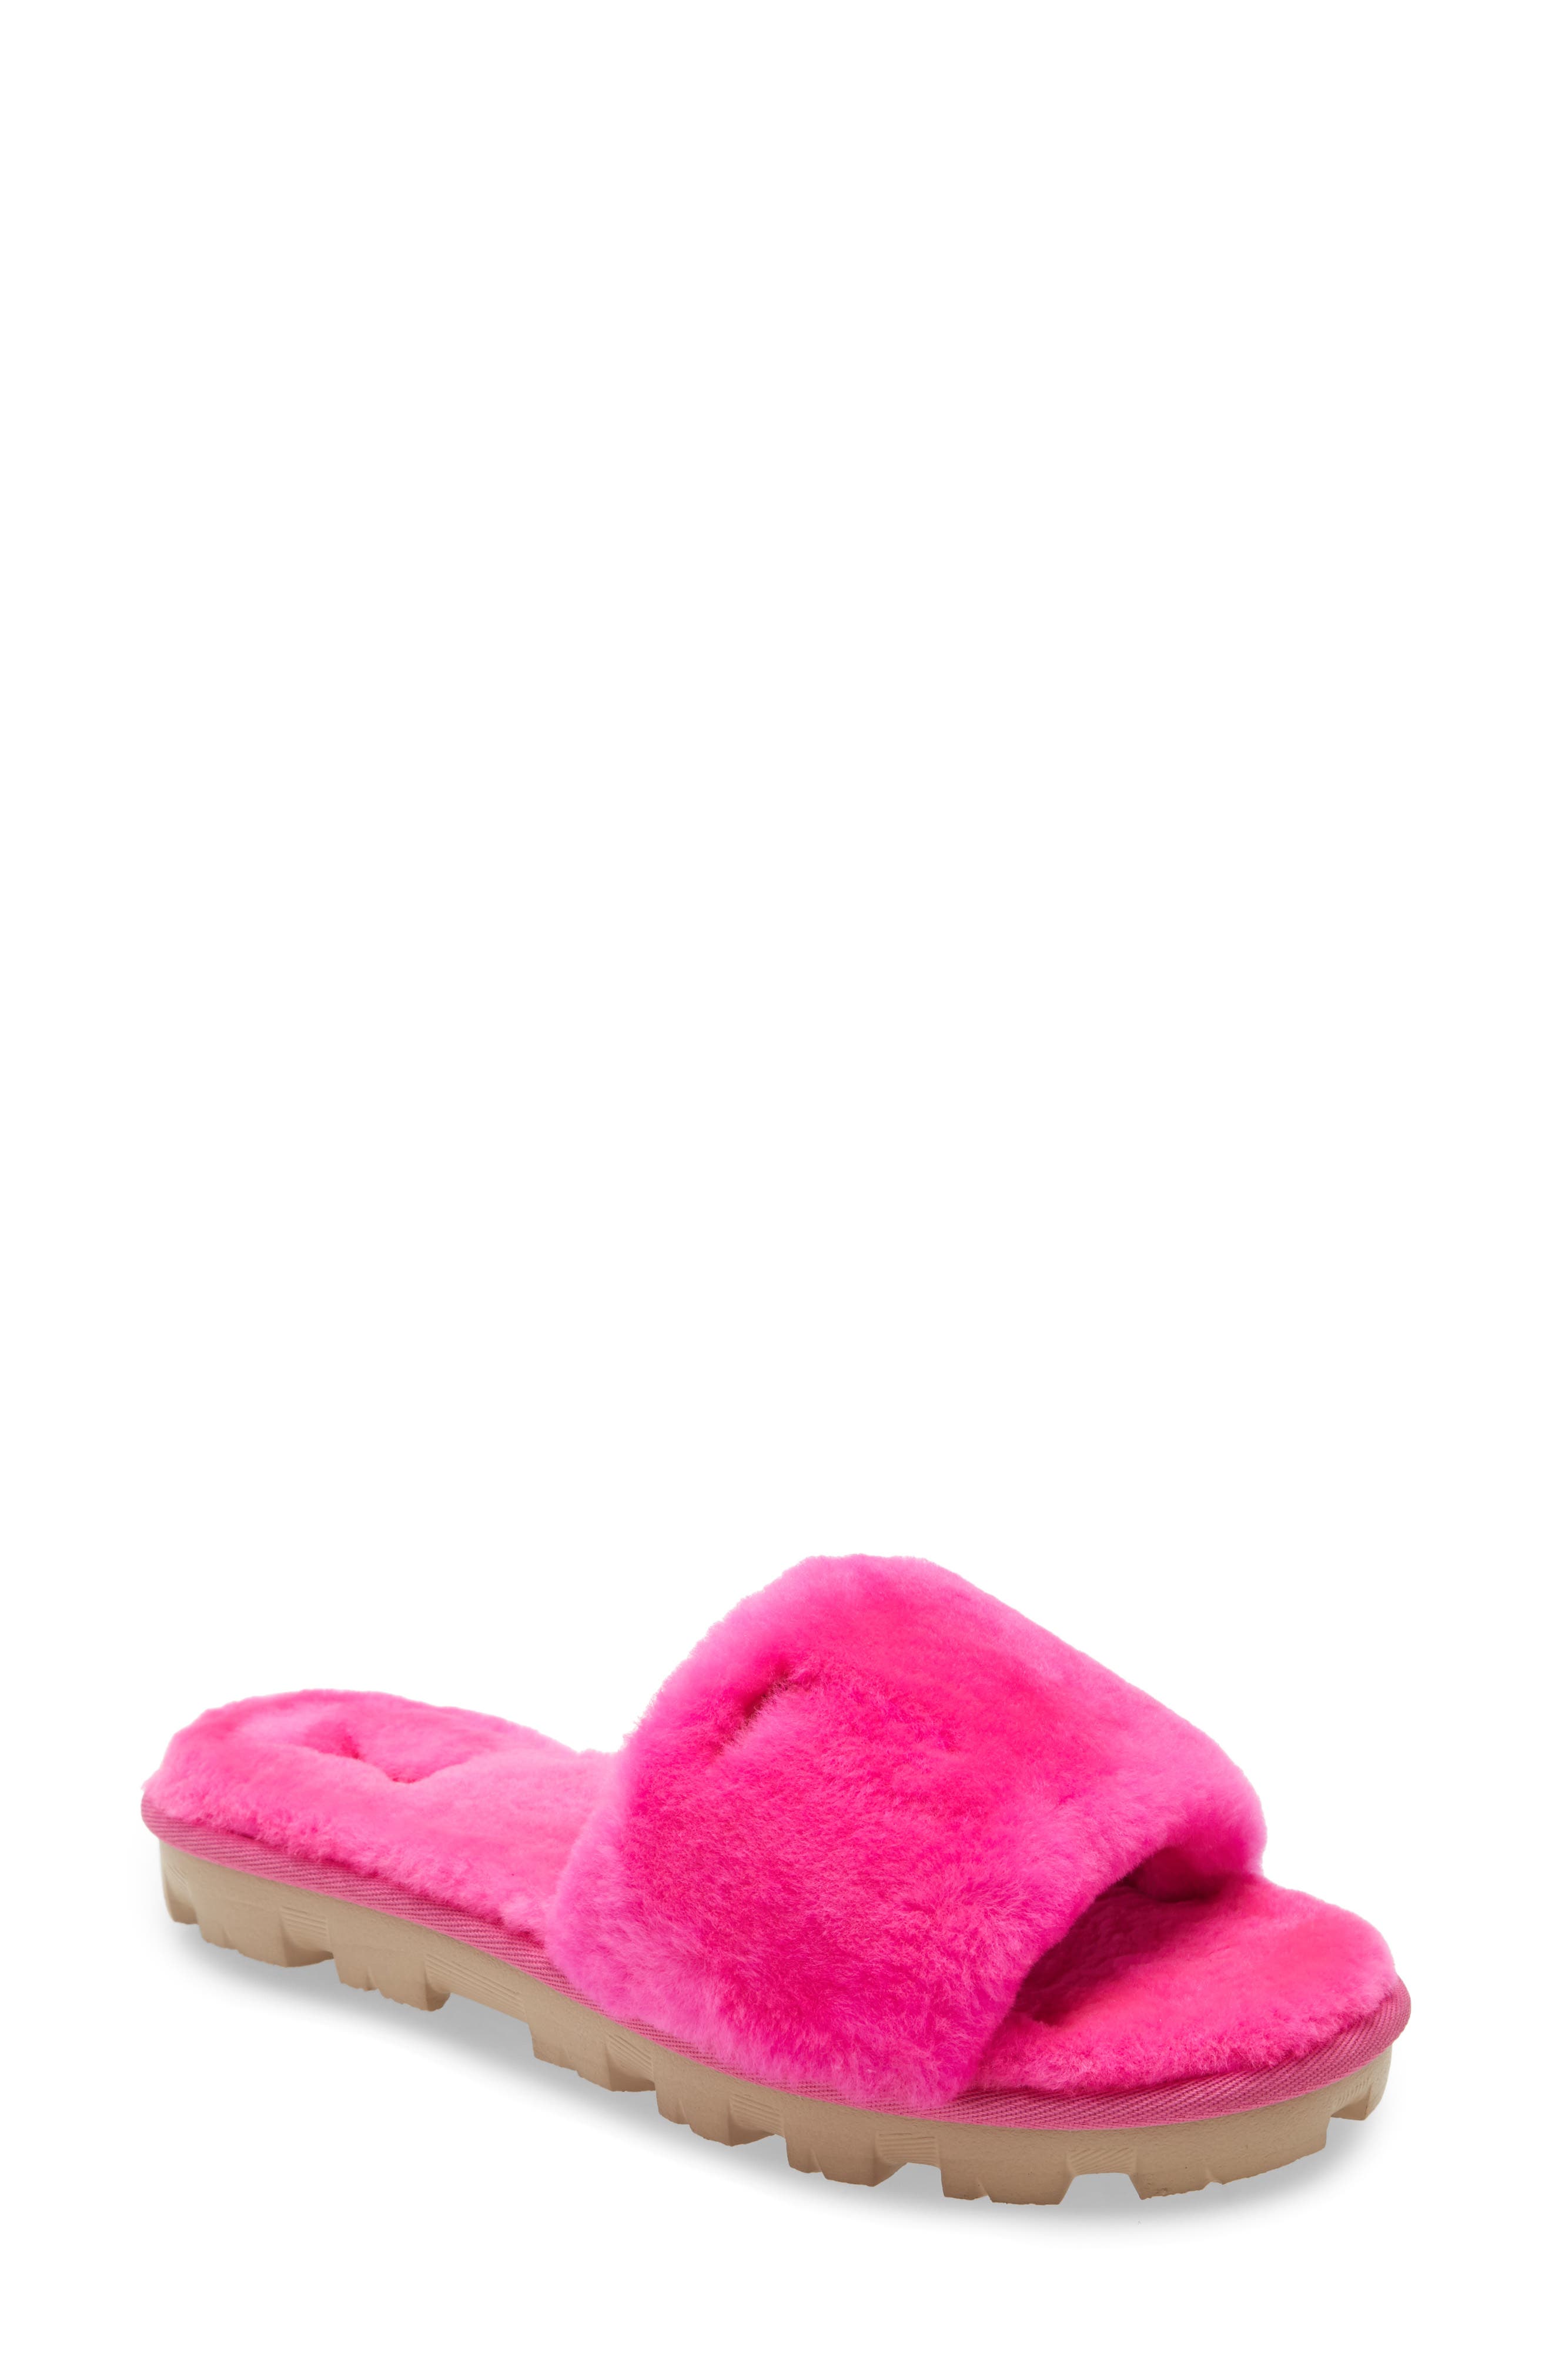 pink ugg slippers nordstrom